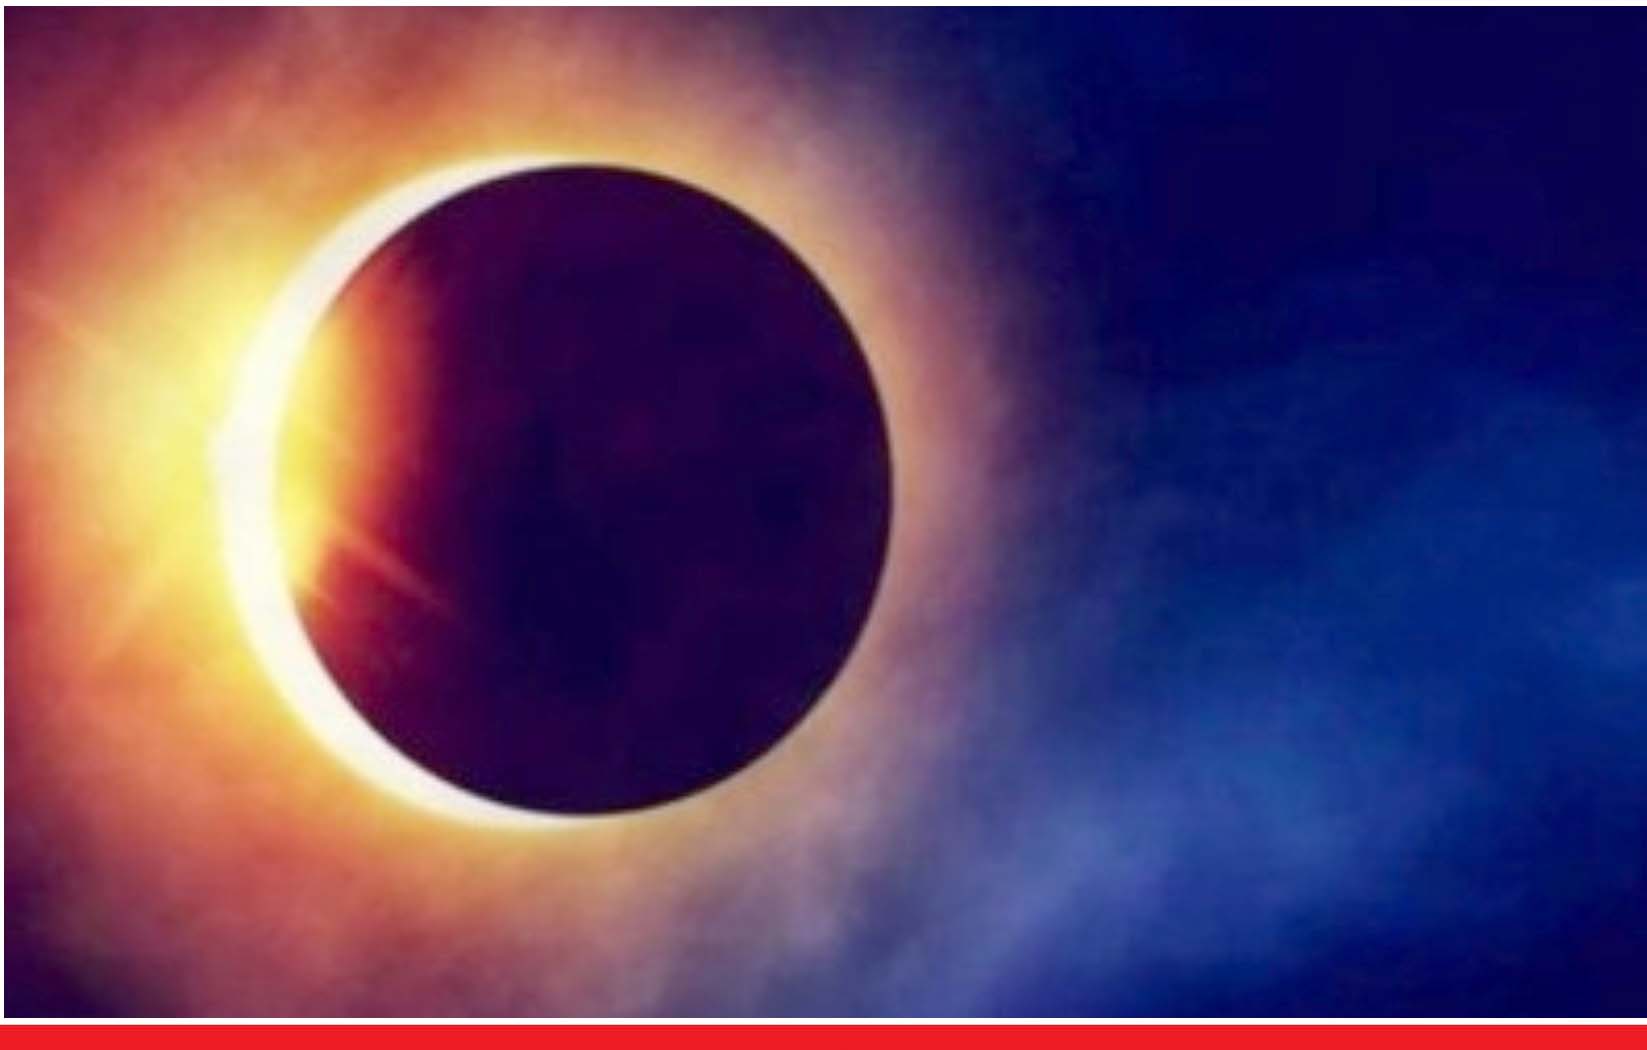 दीपावली के अगले दिन लगेगा साल का अंतिम सूर्य ग्रहण, ये राशि वाले कुछ चीजों में सतर्क रहें